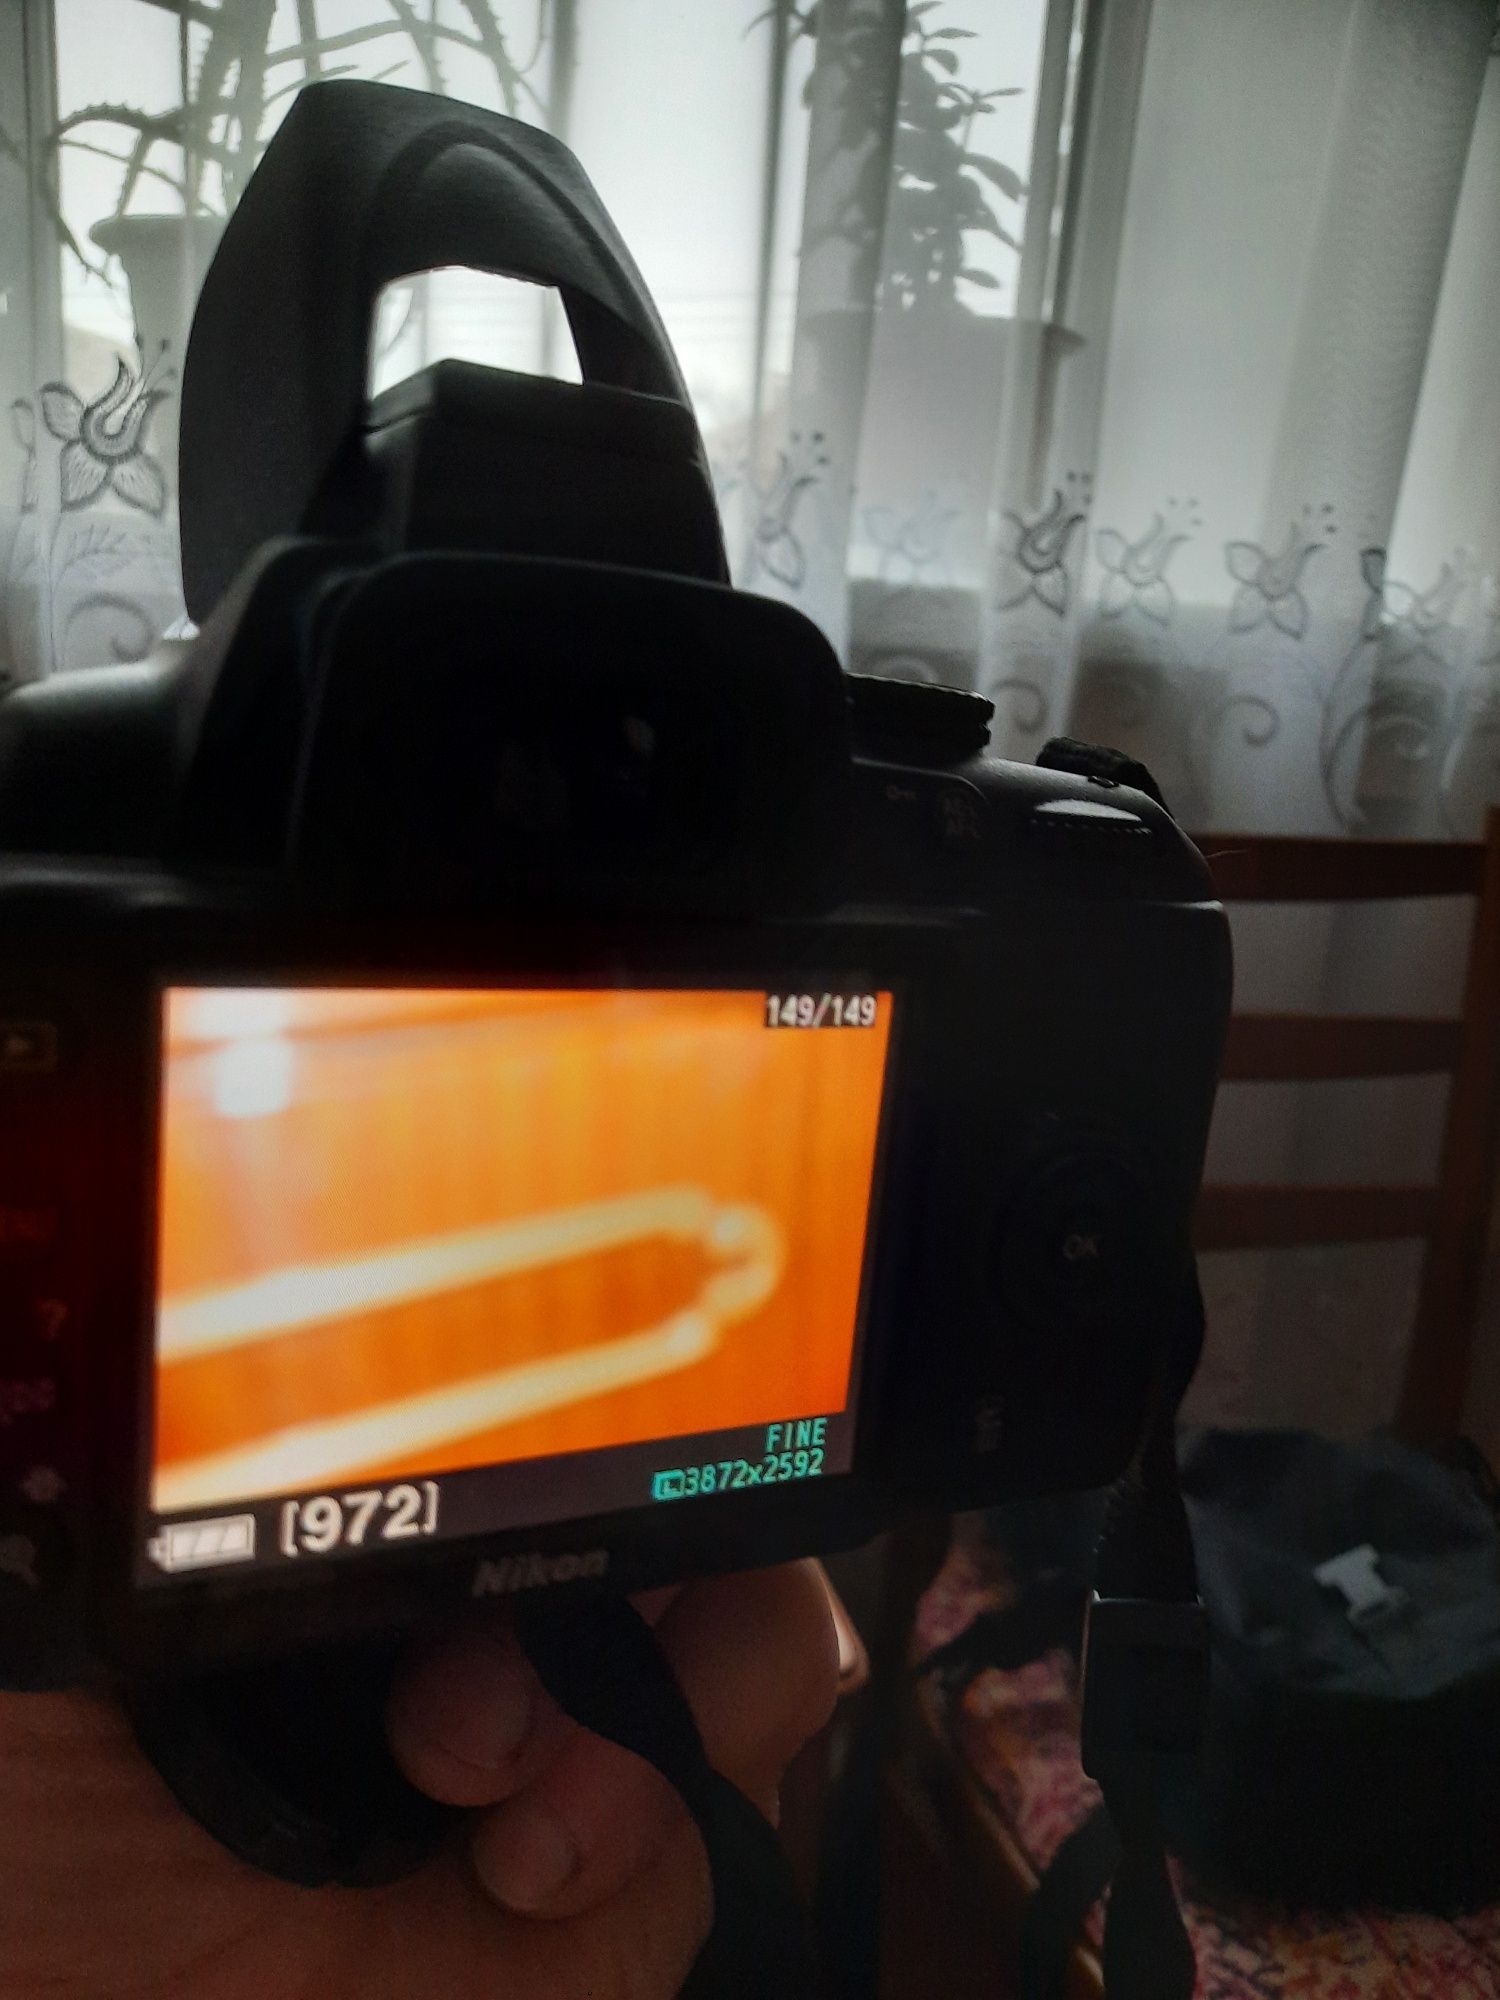 Зеркальнны фотоаппарат Nikon D3000